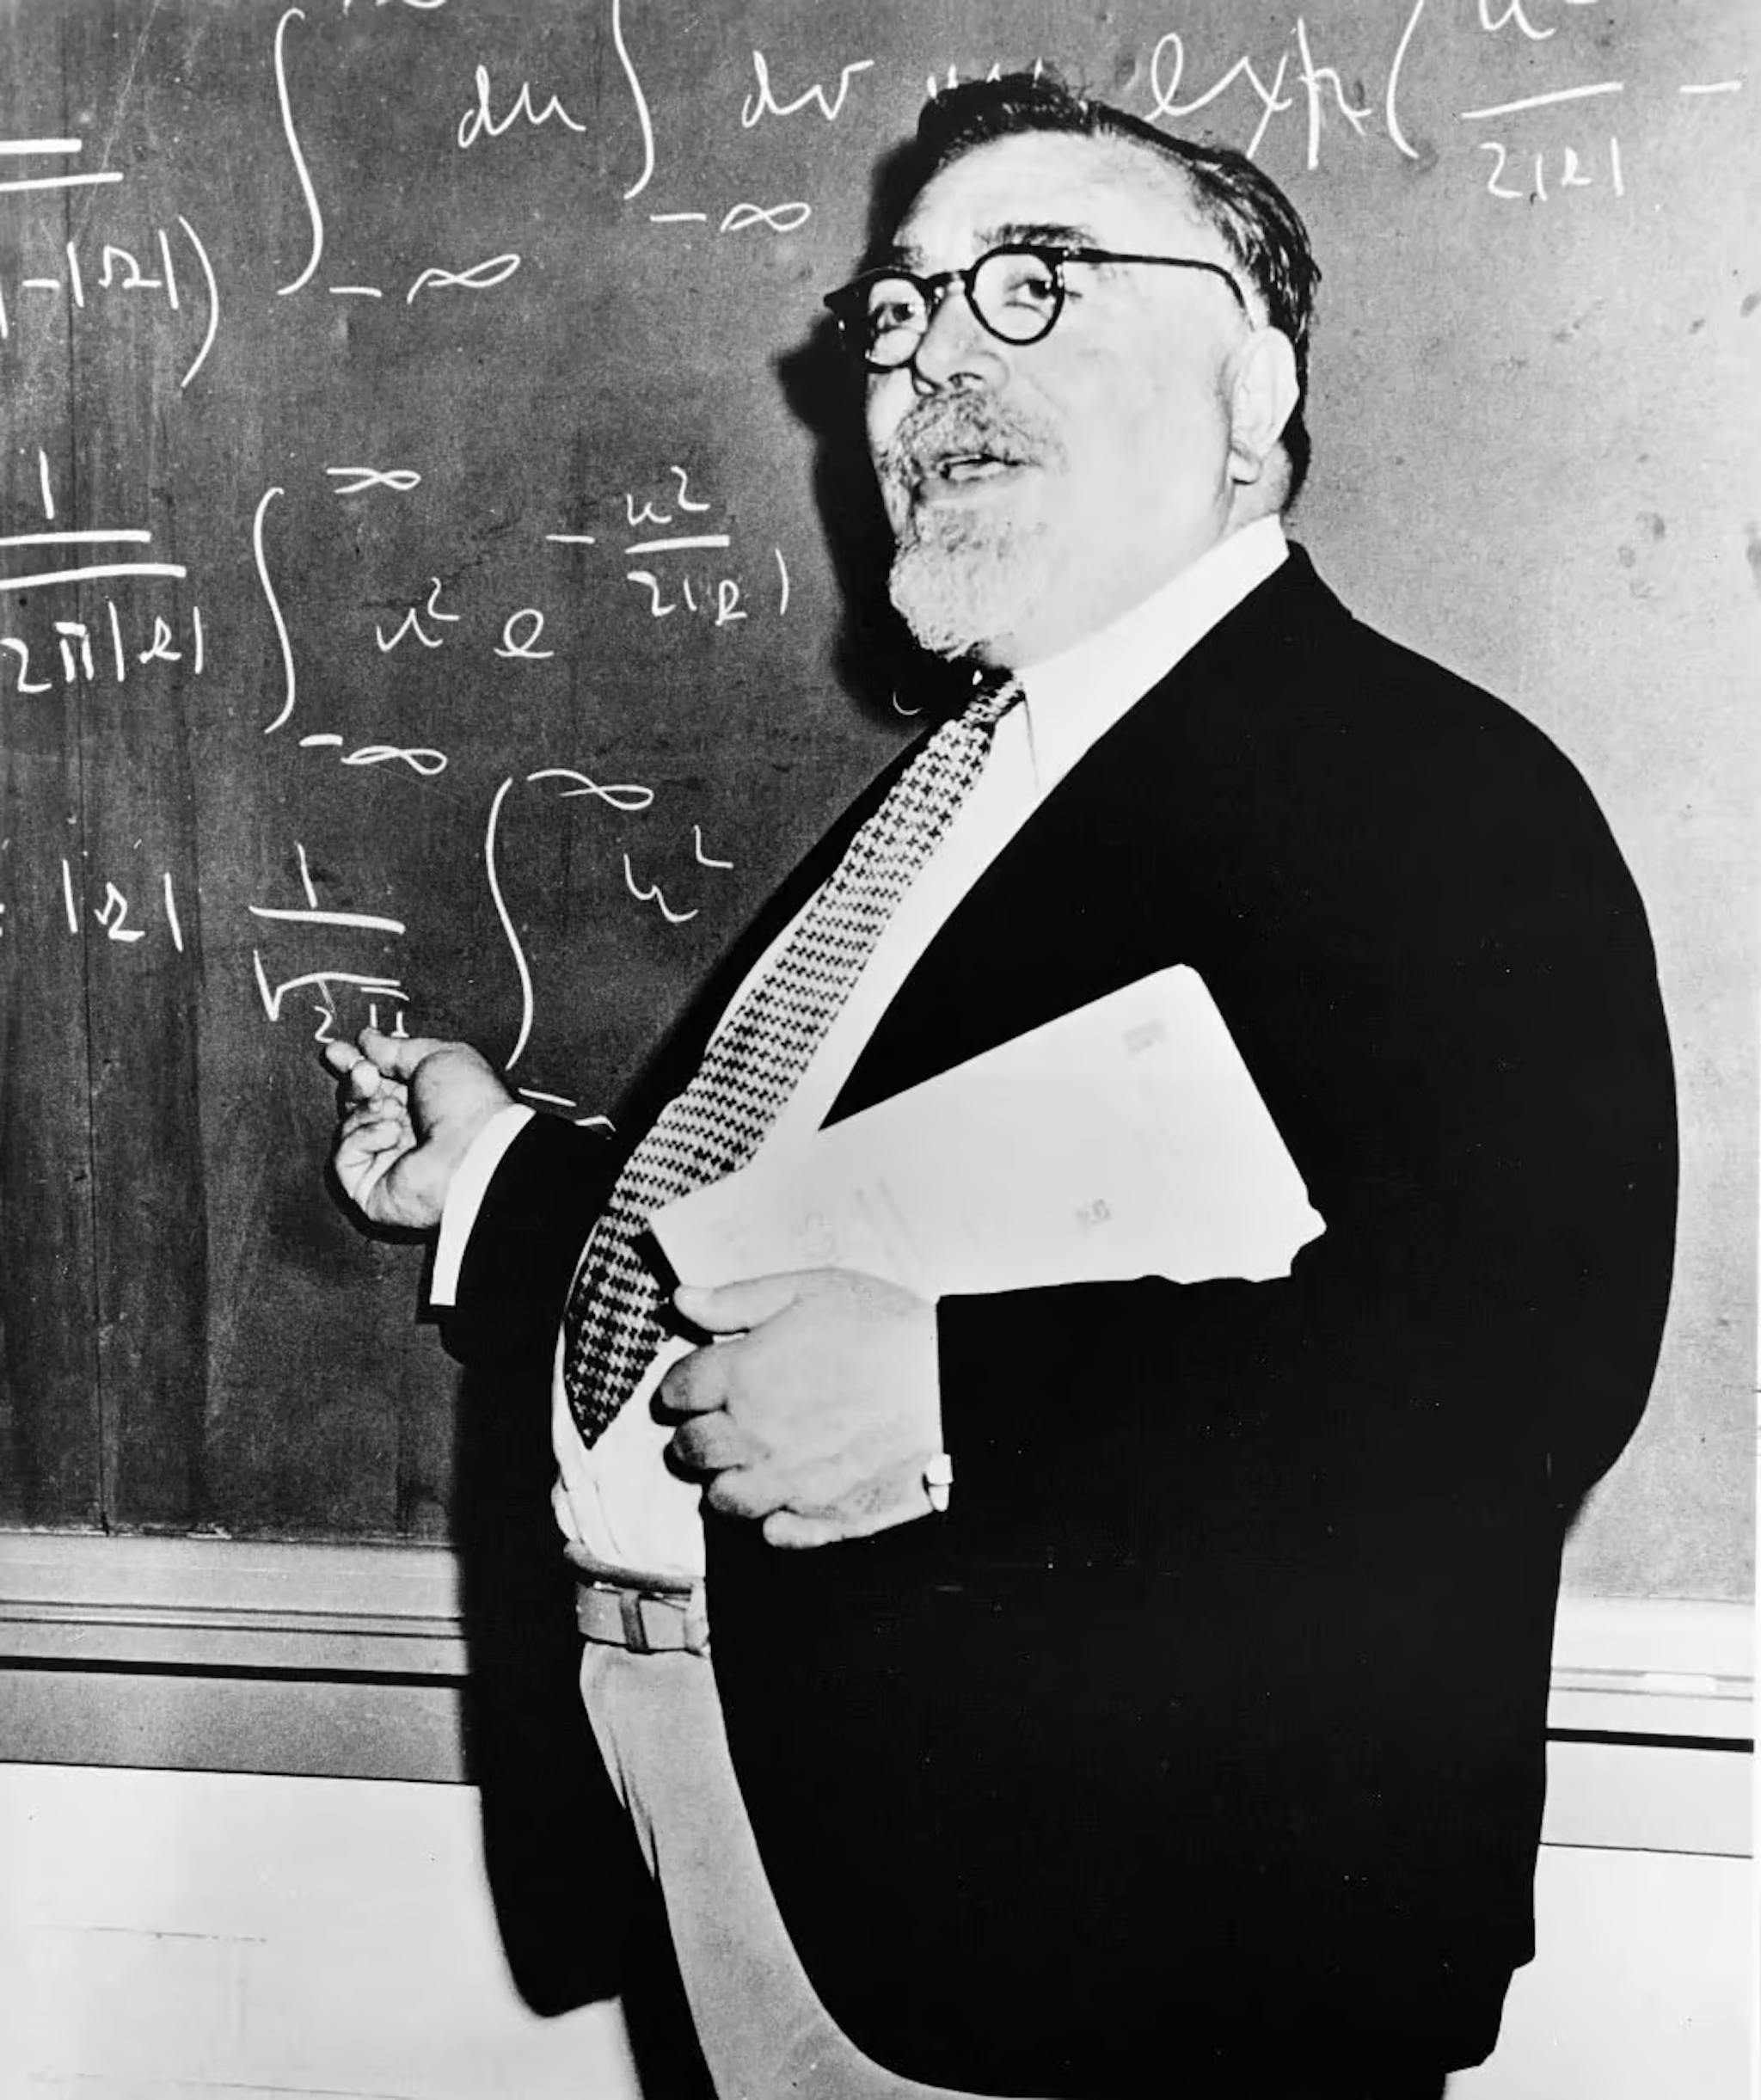 Norbert Wiener (1894-1964) đã có những đóng góp đáng kể cho các quy trình ngẫu nhiên, kỹ thuật điện tử và hệ thống điều khiển. Ông khởi xướng điều khiển học và đưa ra giả thuyết rằng cơ chế phản hồi dẫn đến hành vi thông minh, đặt nền móng cho AI hiện đại.